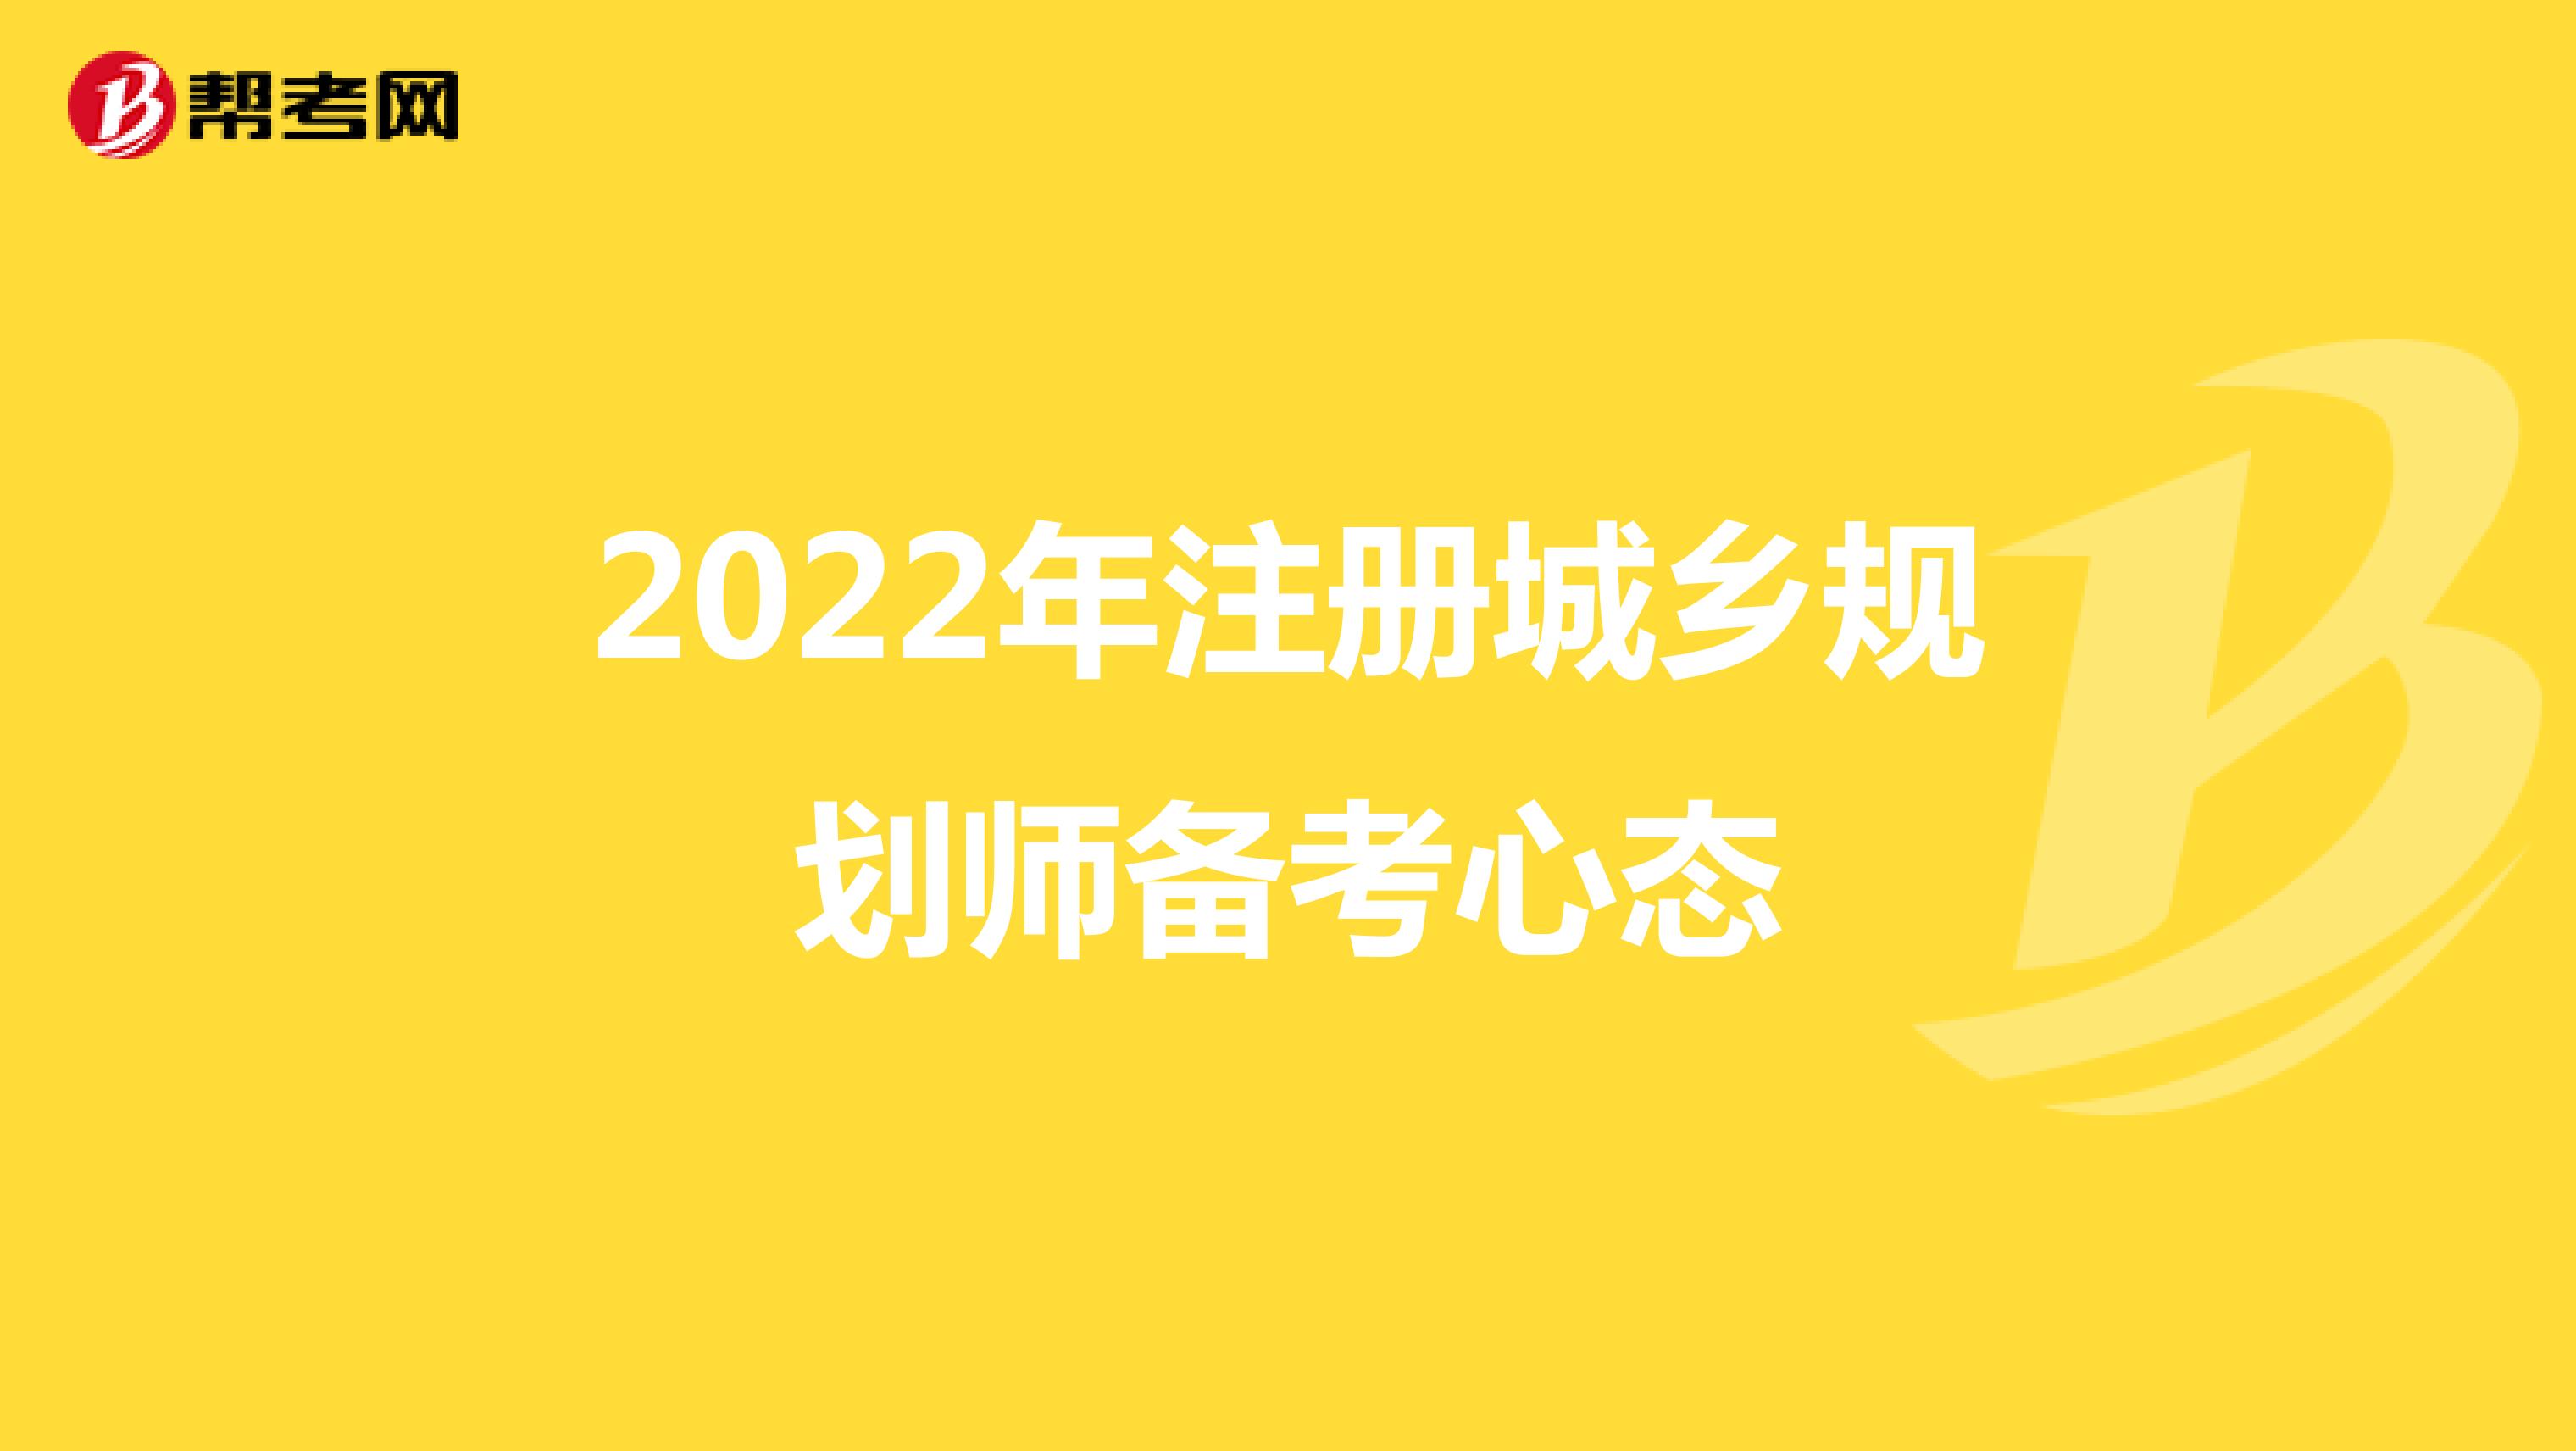 2022年注册城乡规划师备考心态